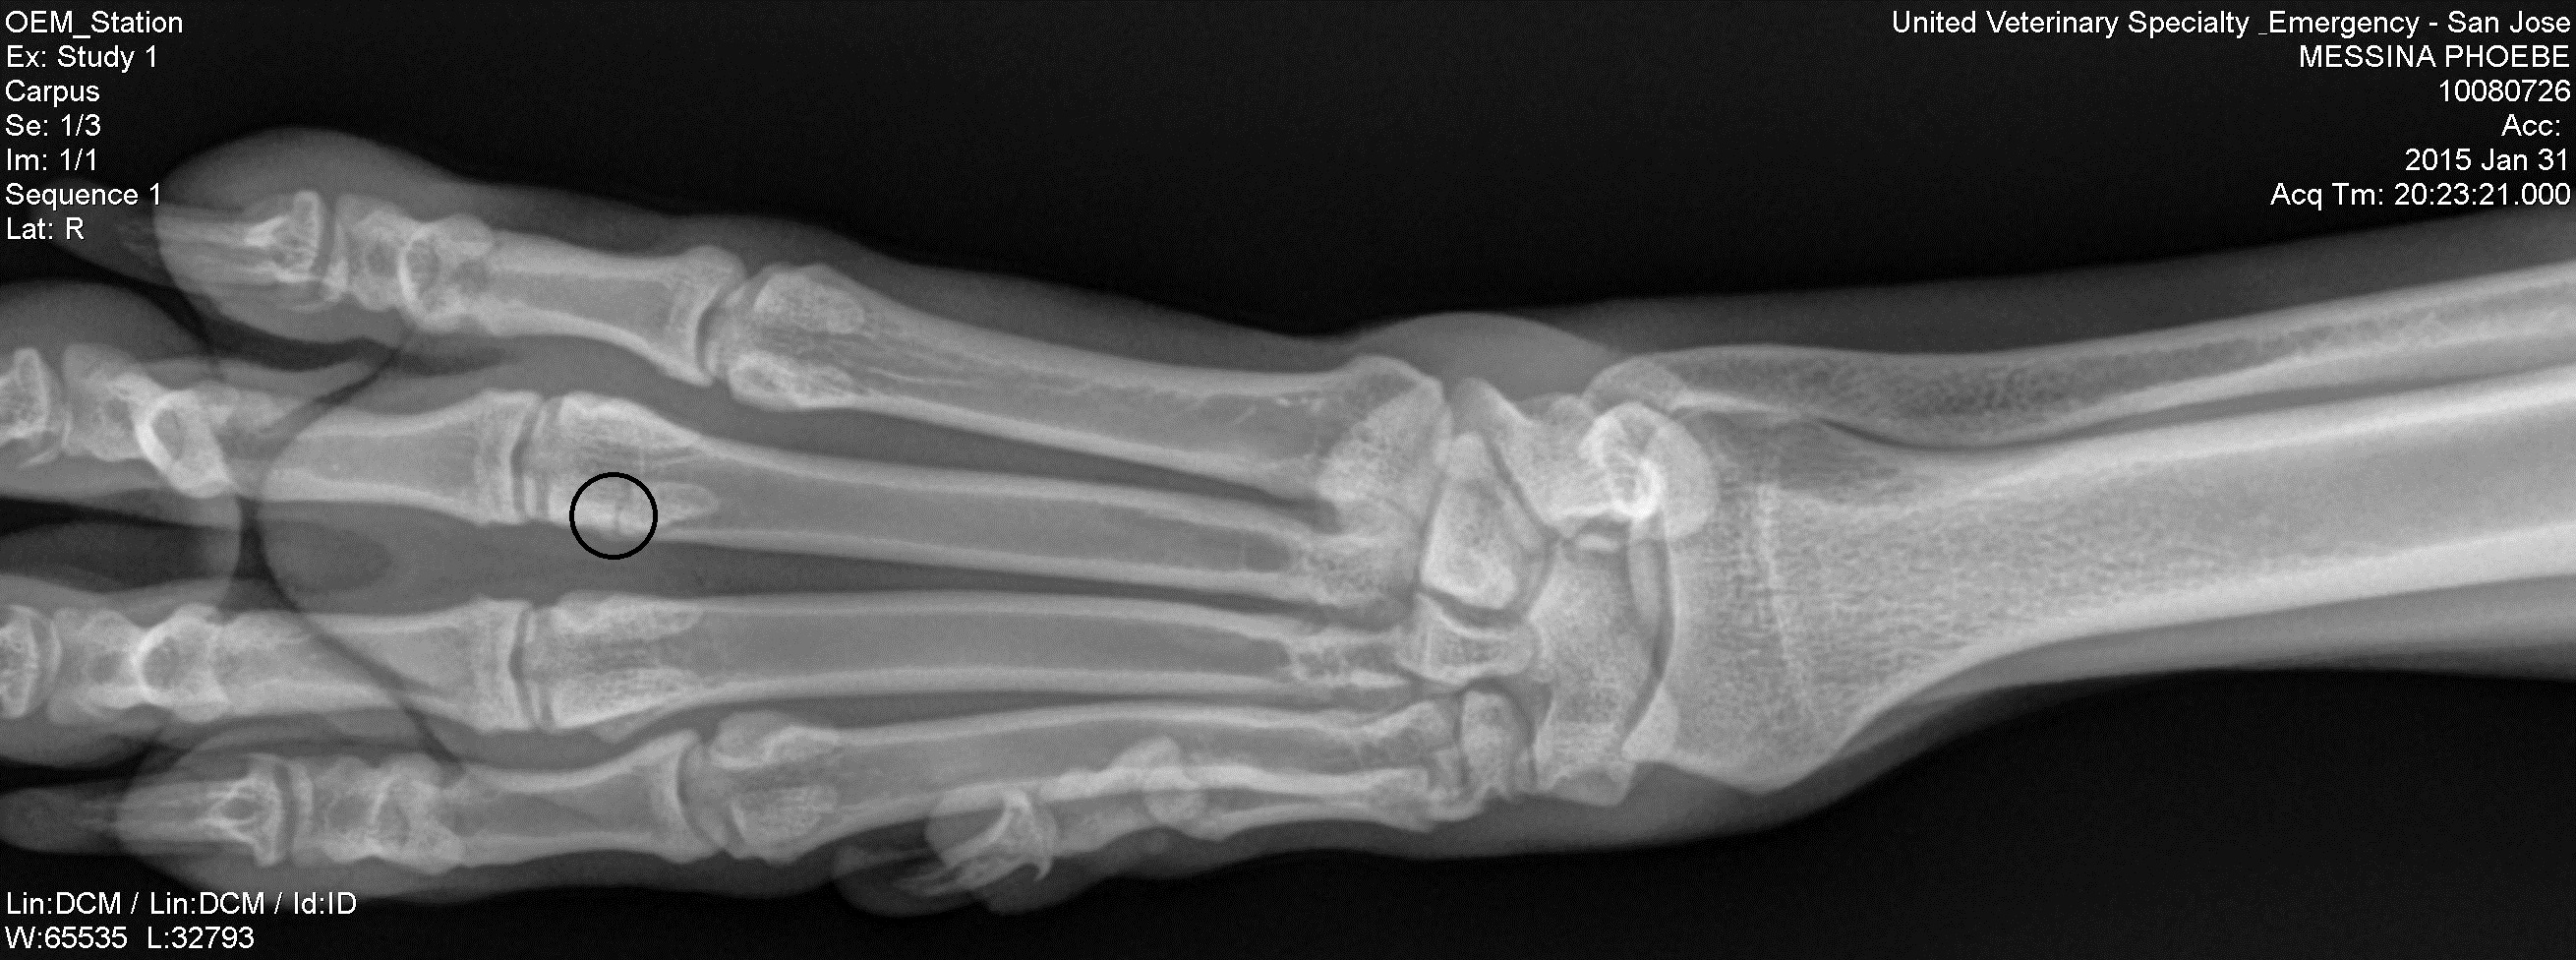 Right Foot X Ray